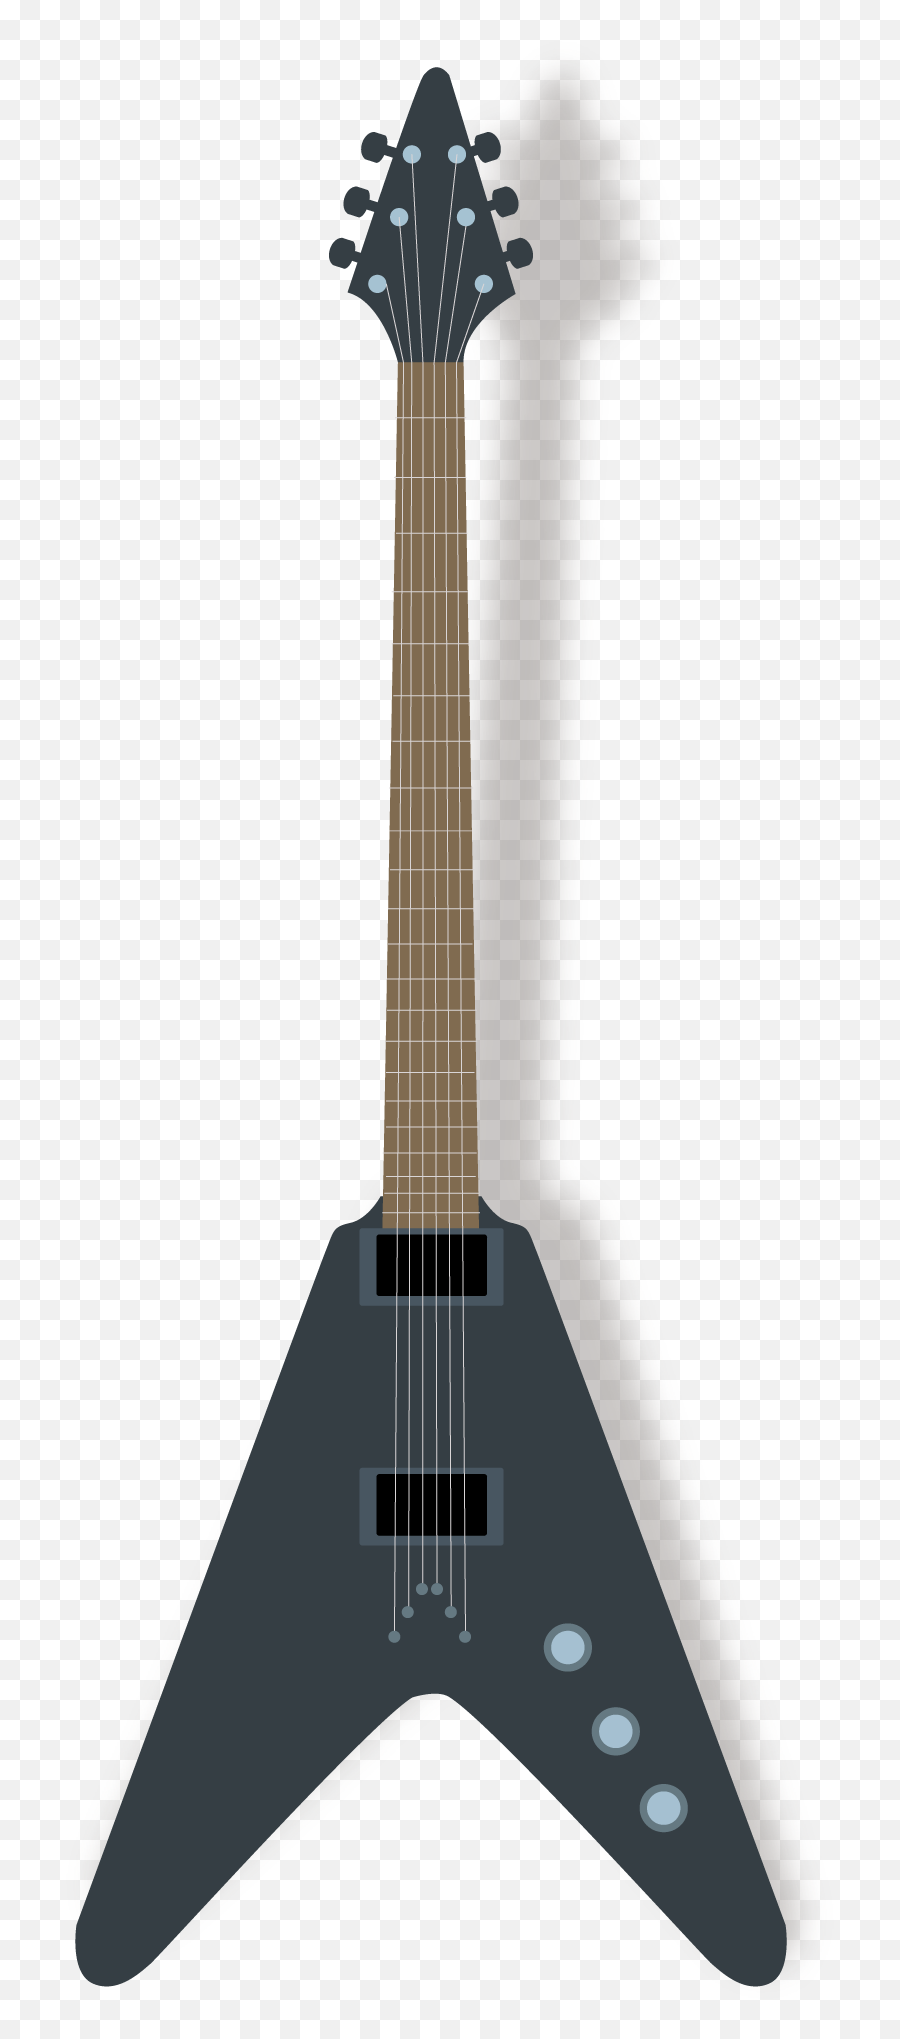 Guitar Png Transparent Free Images - Design Bass Gitar,Guitar Clipart Png